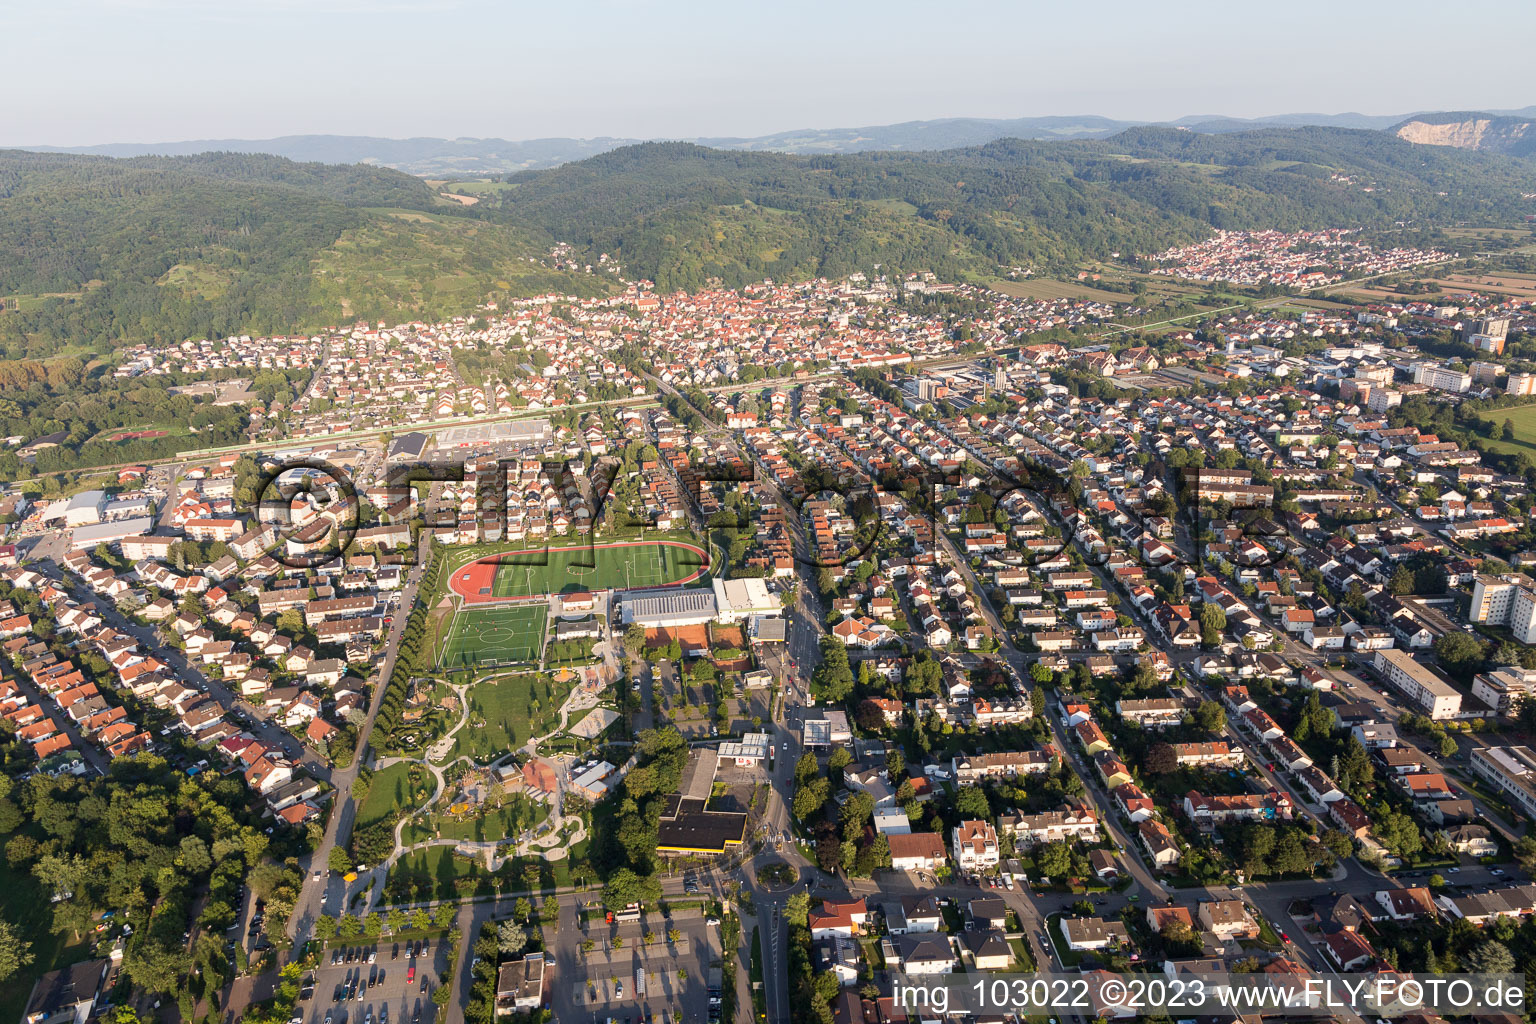 Hemsbach im Bundesland Baden-Württemberg, Deutschland aus der Luft betrachtet